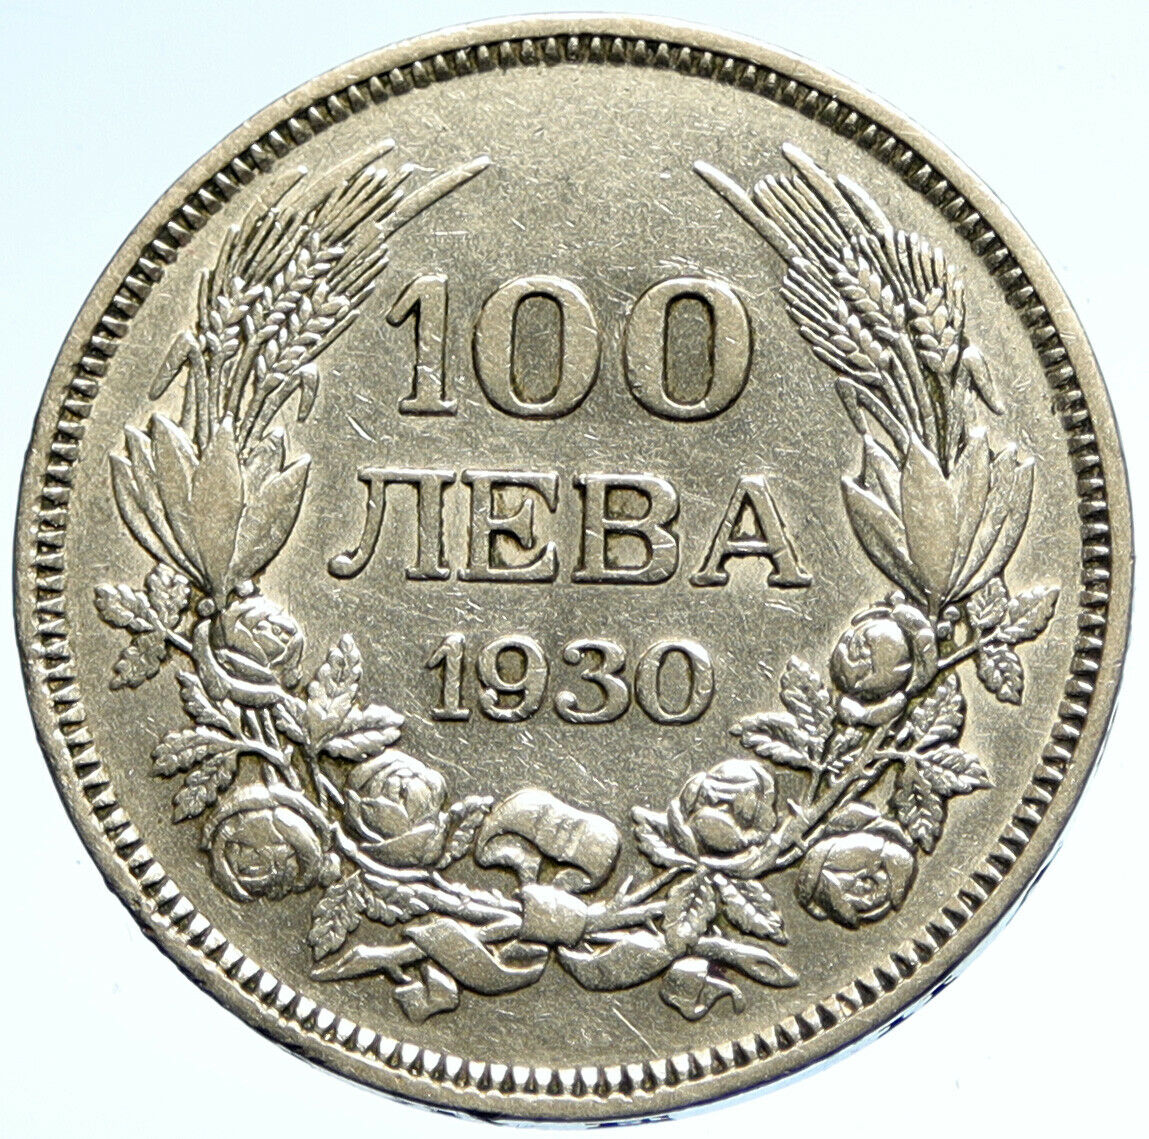 1930 BULGARIA Tsar Boris III Large VINTAGE European Silver 100 Leva Coin i104736